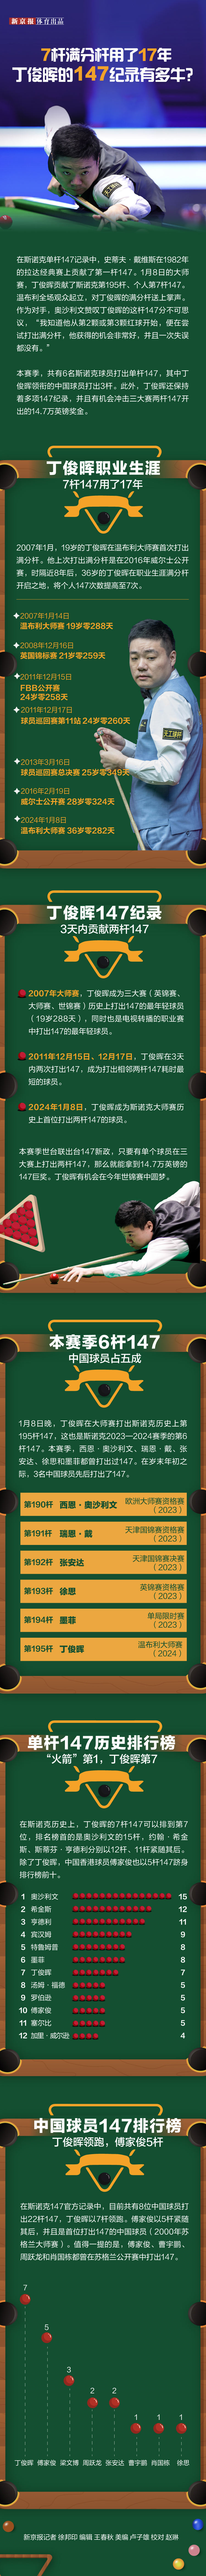 挑战赛萨格勒布站男单决赛中激战7局  逆转樊振东 林高远夺冠